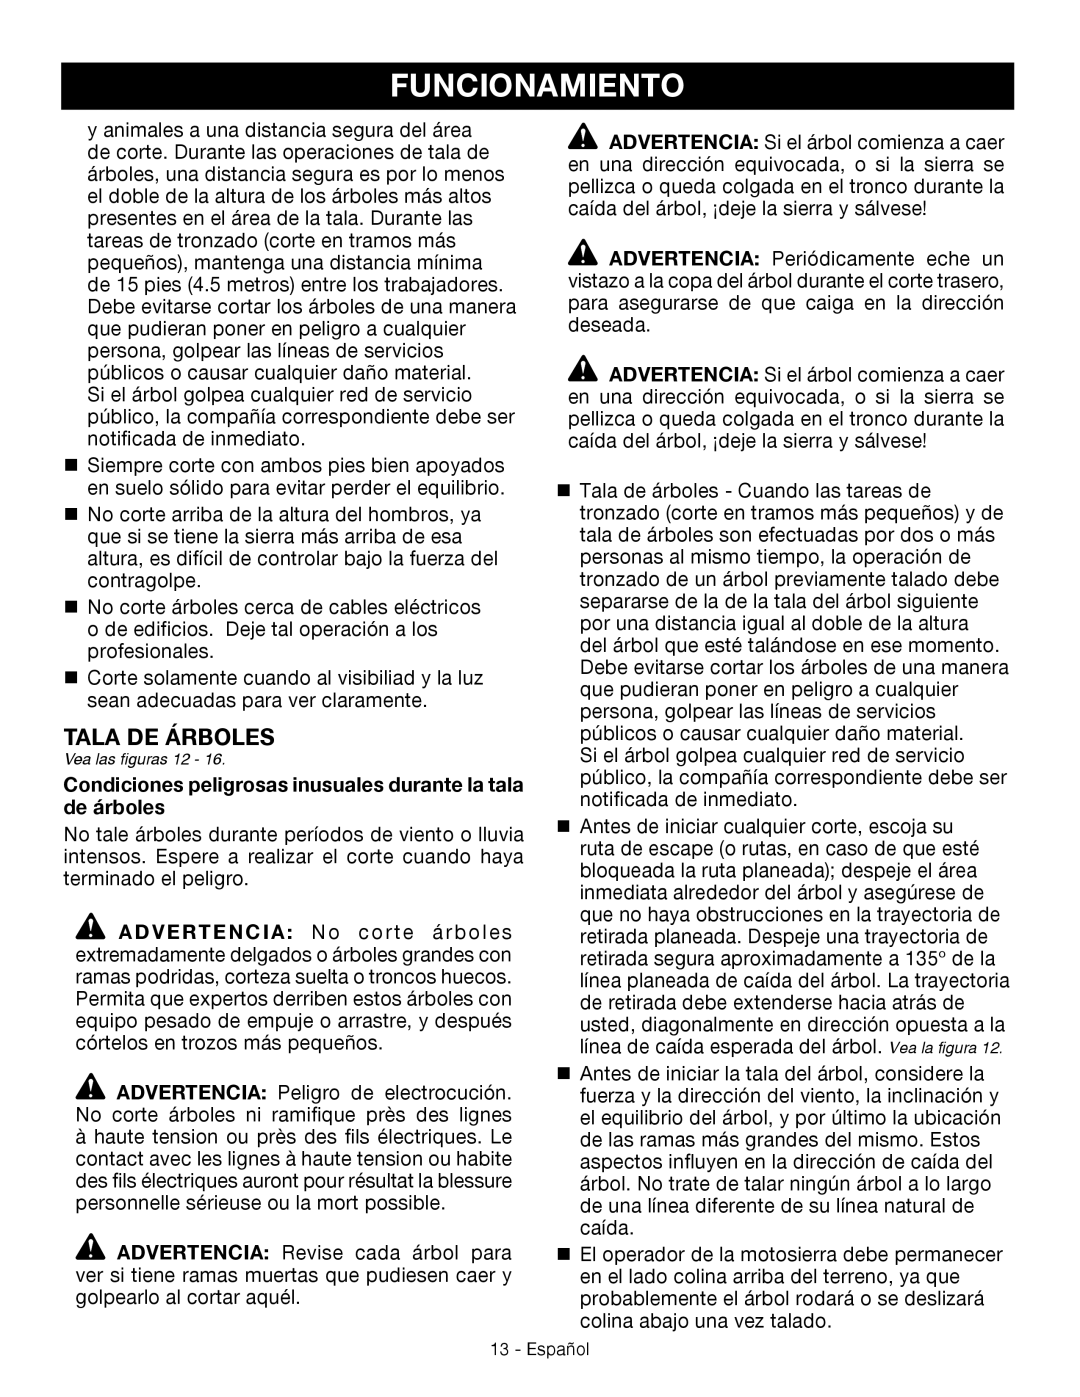 Craftsman 315.3413 manual Funcionamiento, Tala de árboles, Español 